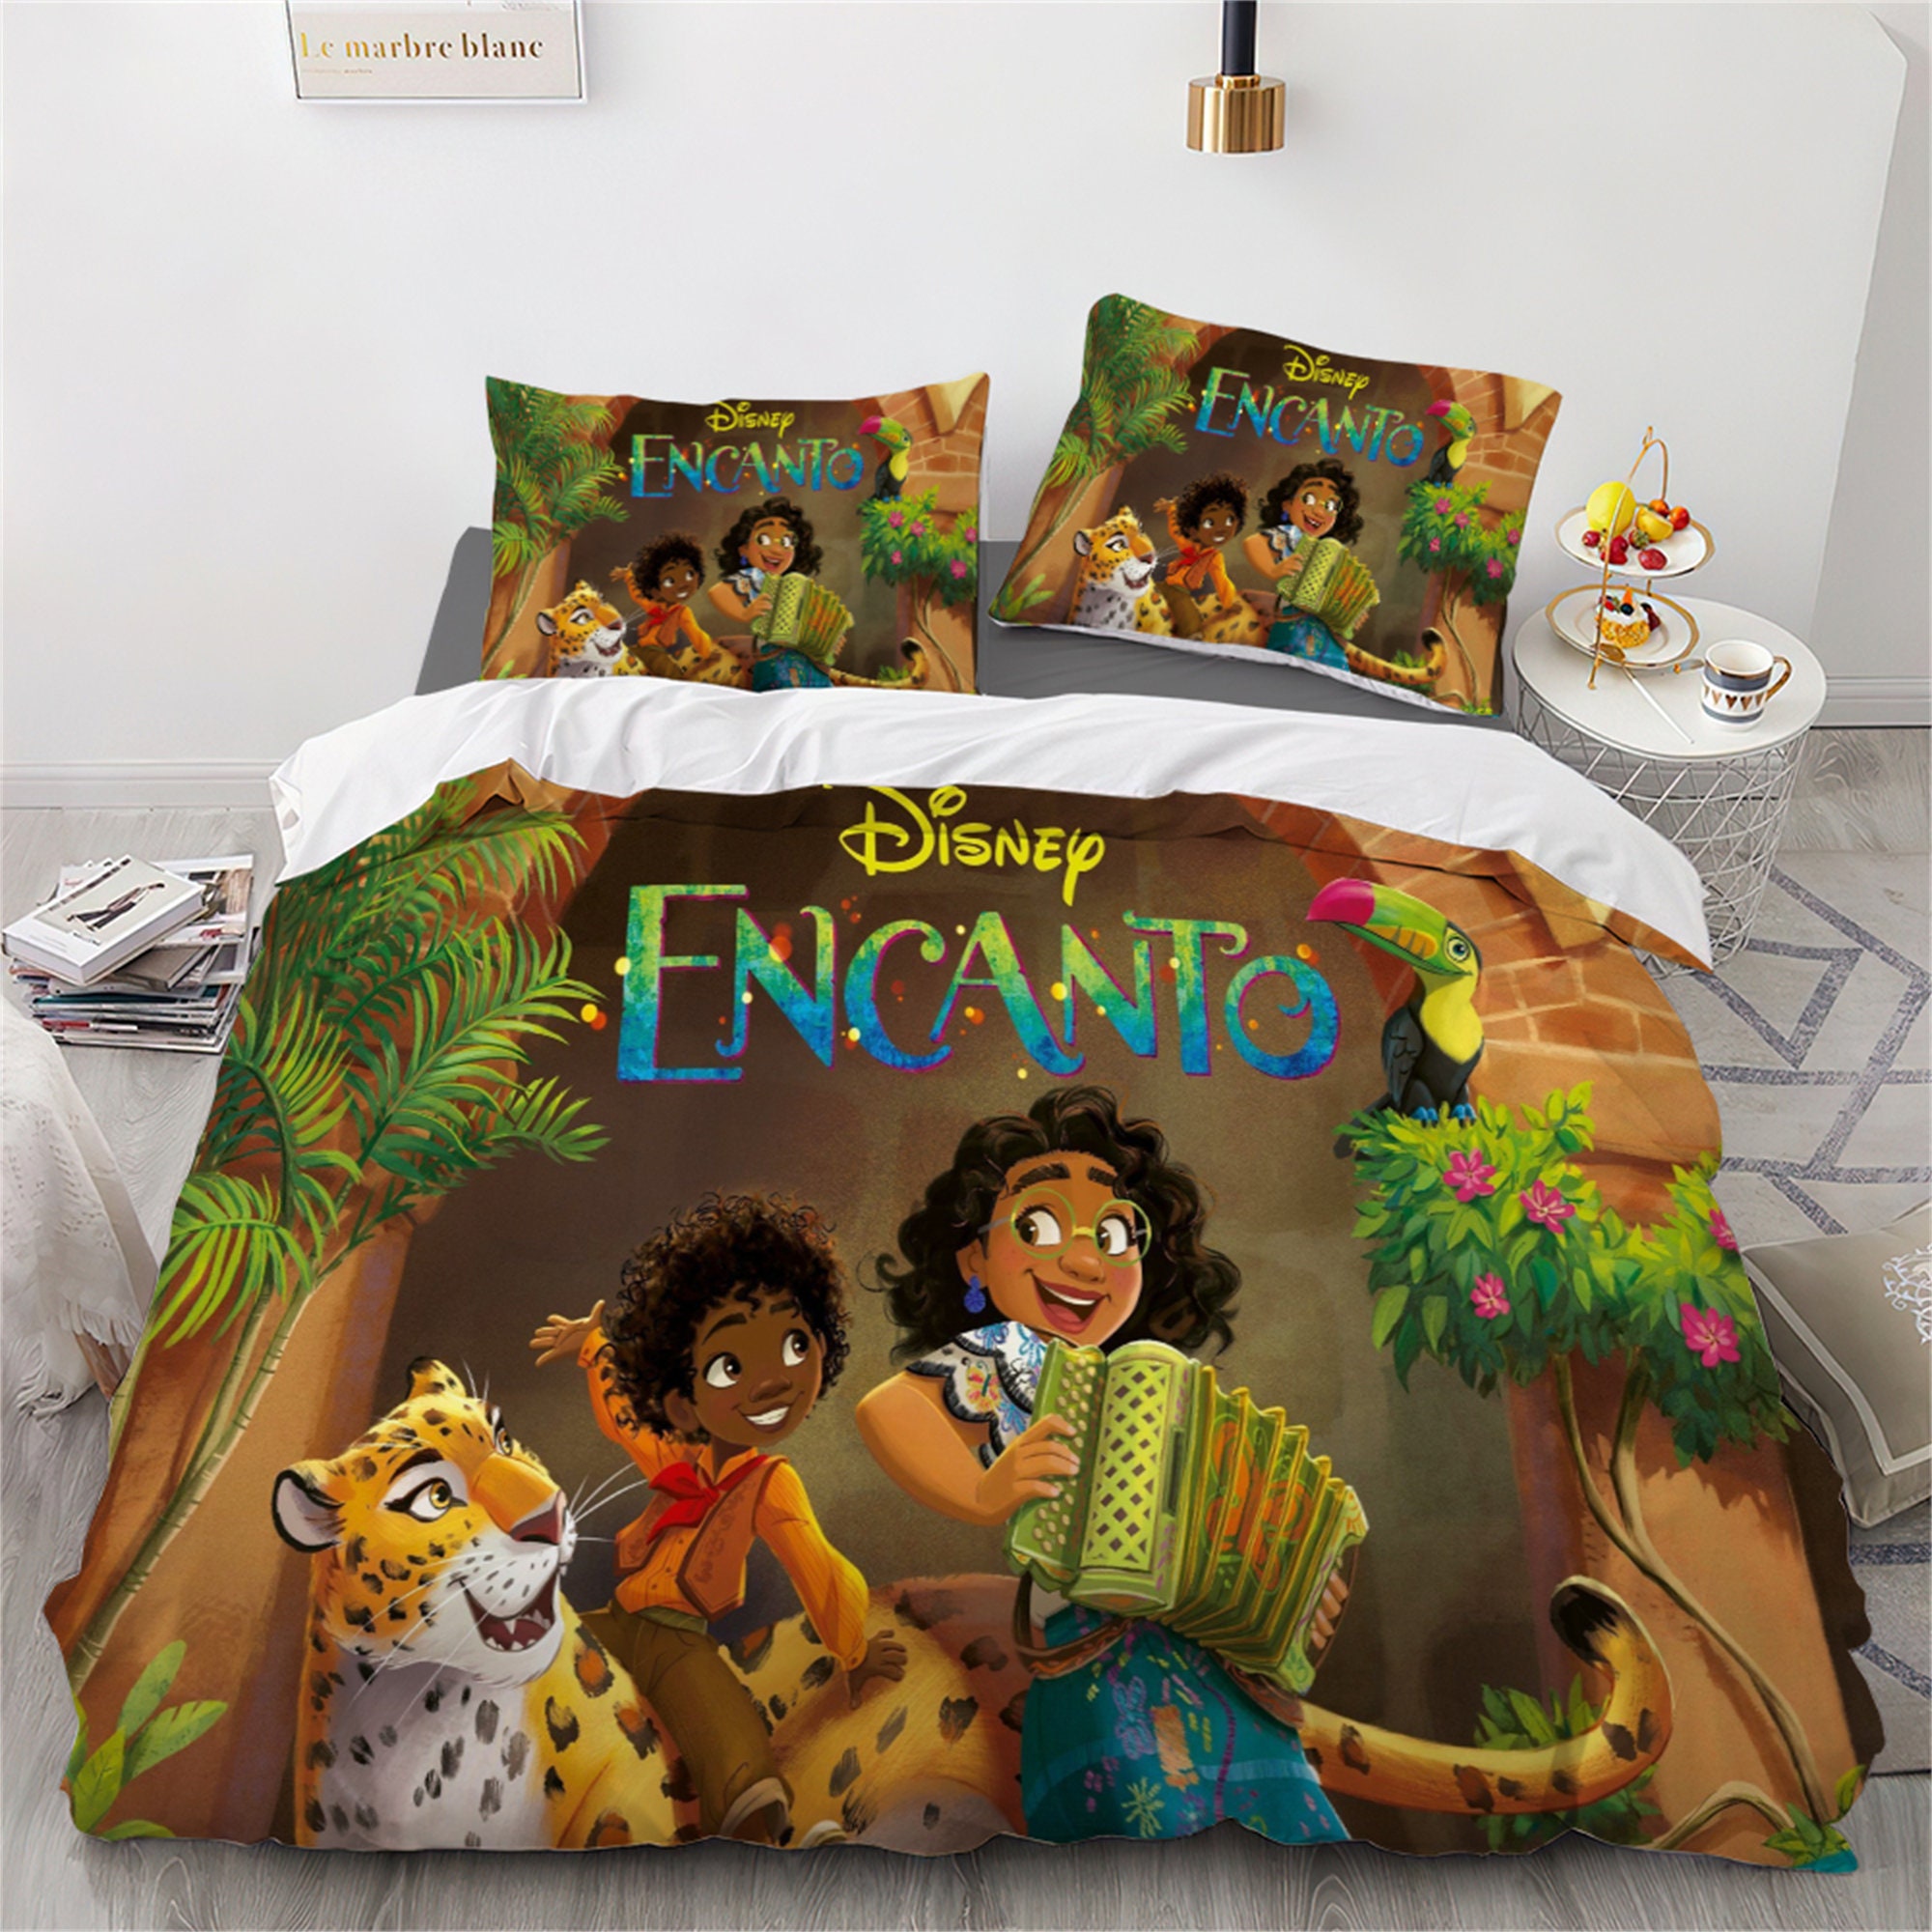 Northwest Disney's Encanto Pillow, 18 x 18, Uniquely Me